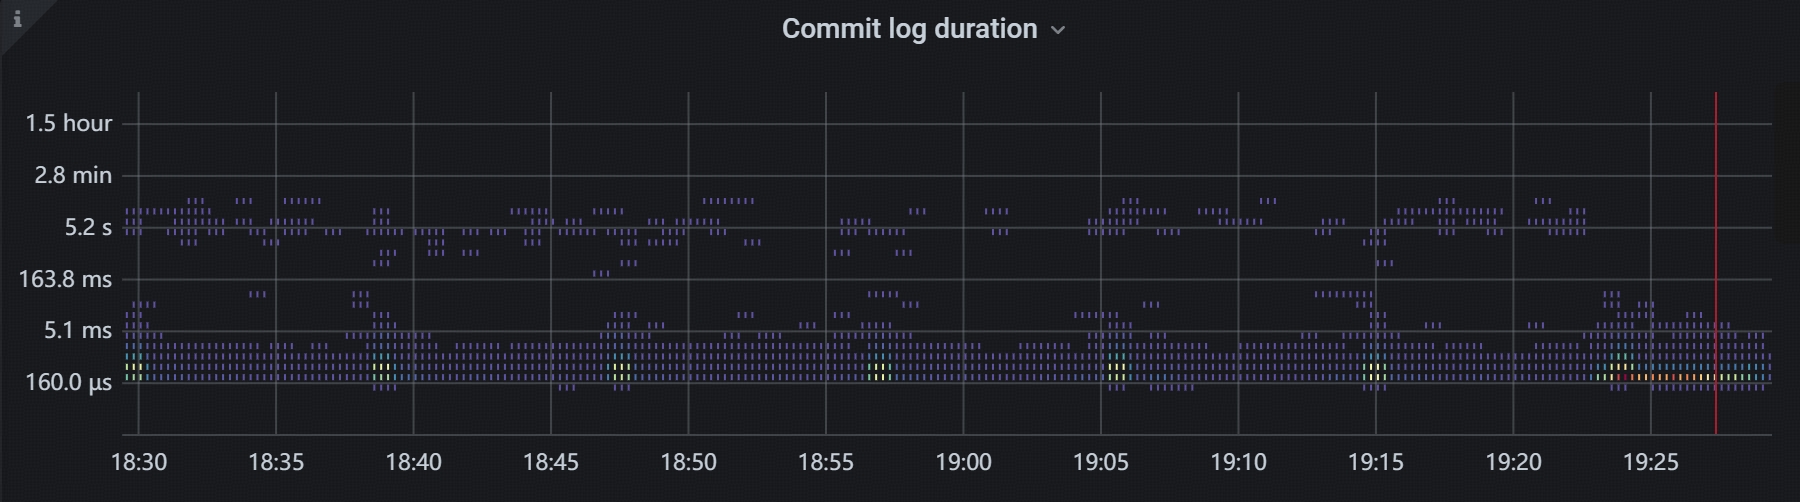 图 4 查看 Commit log duration